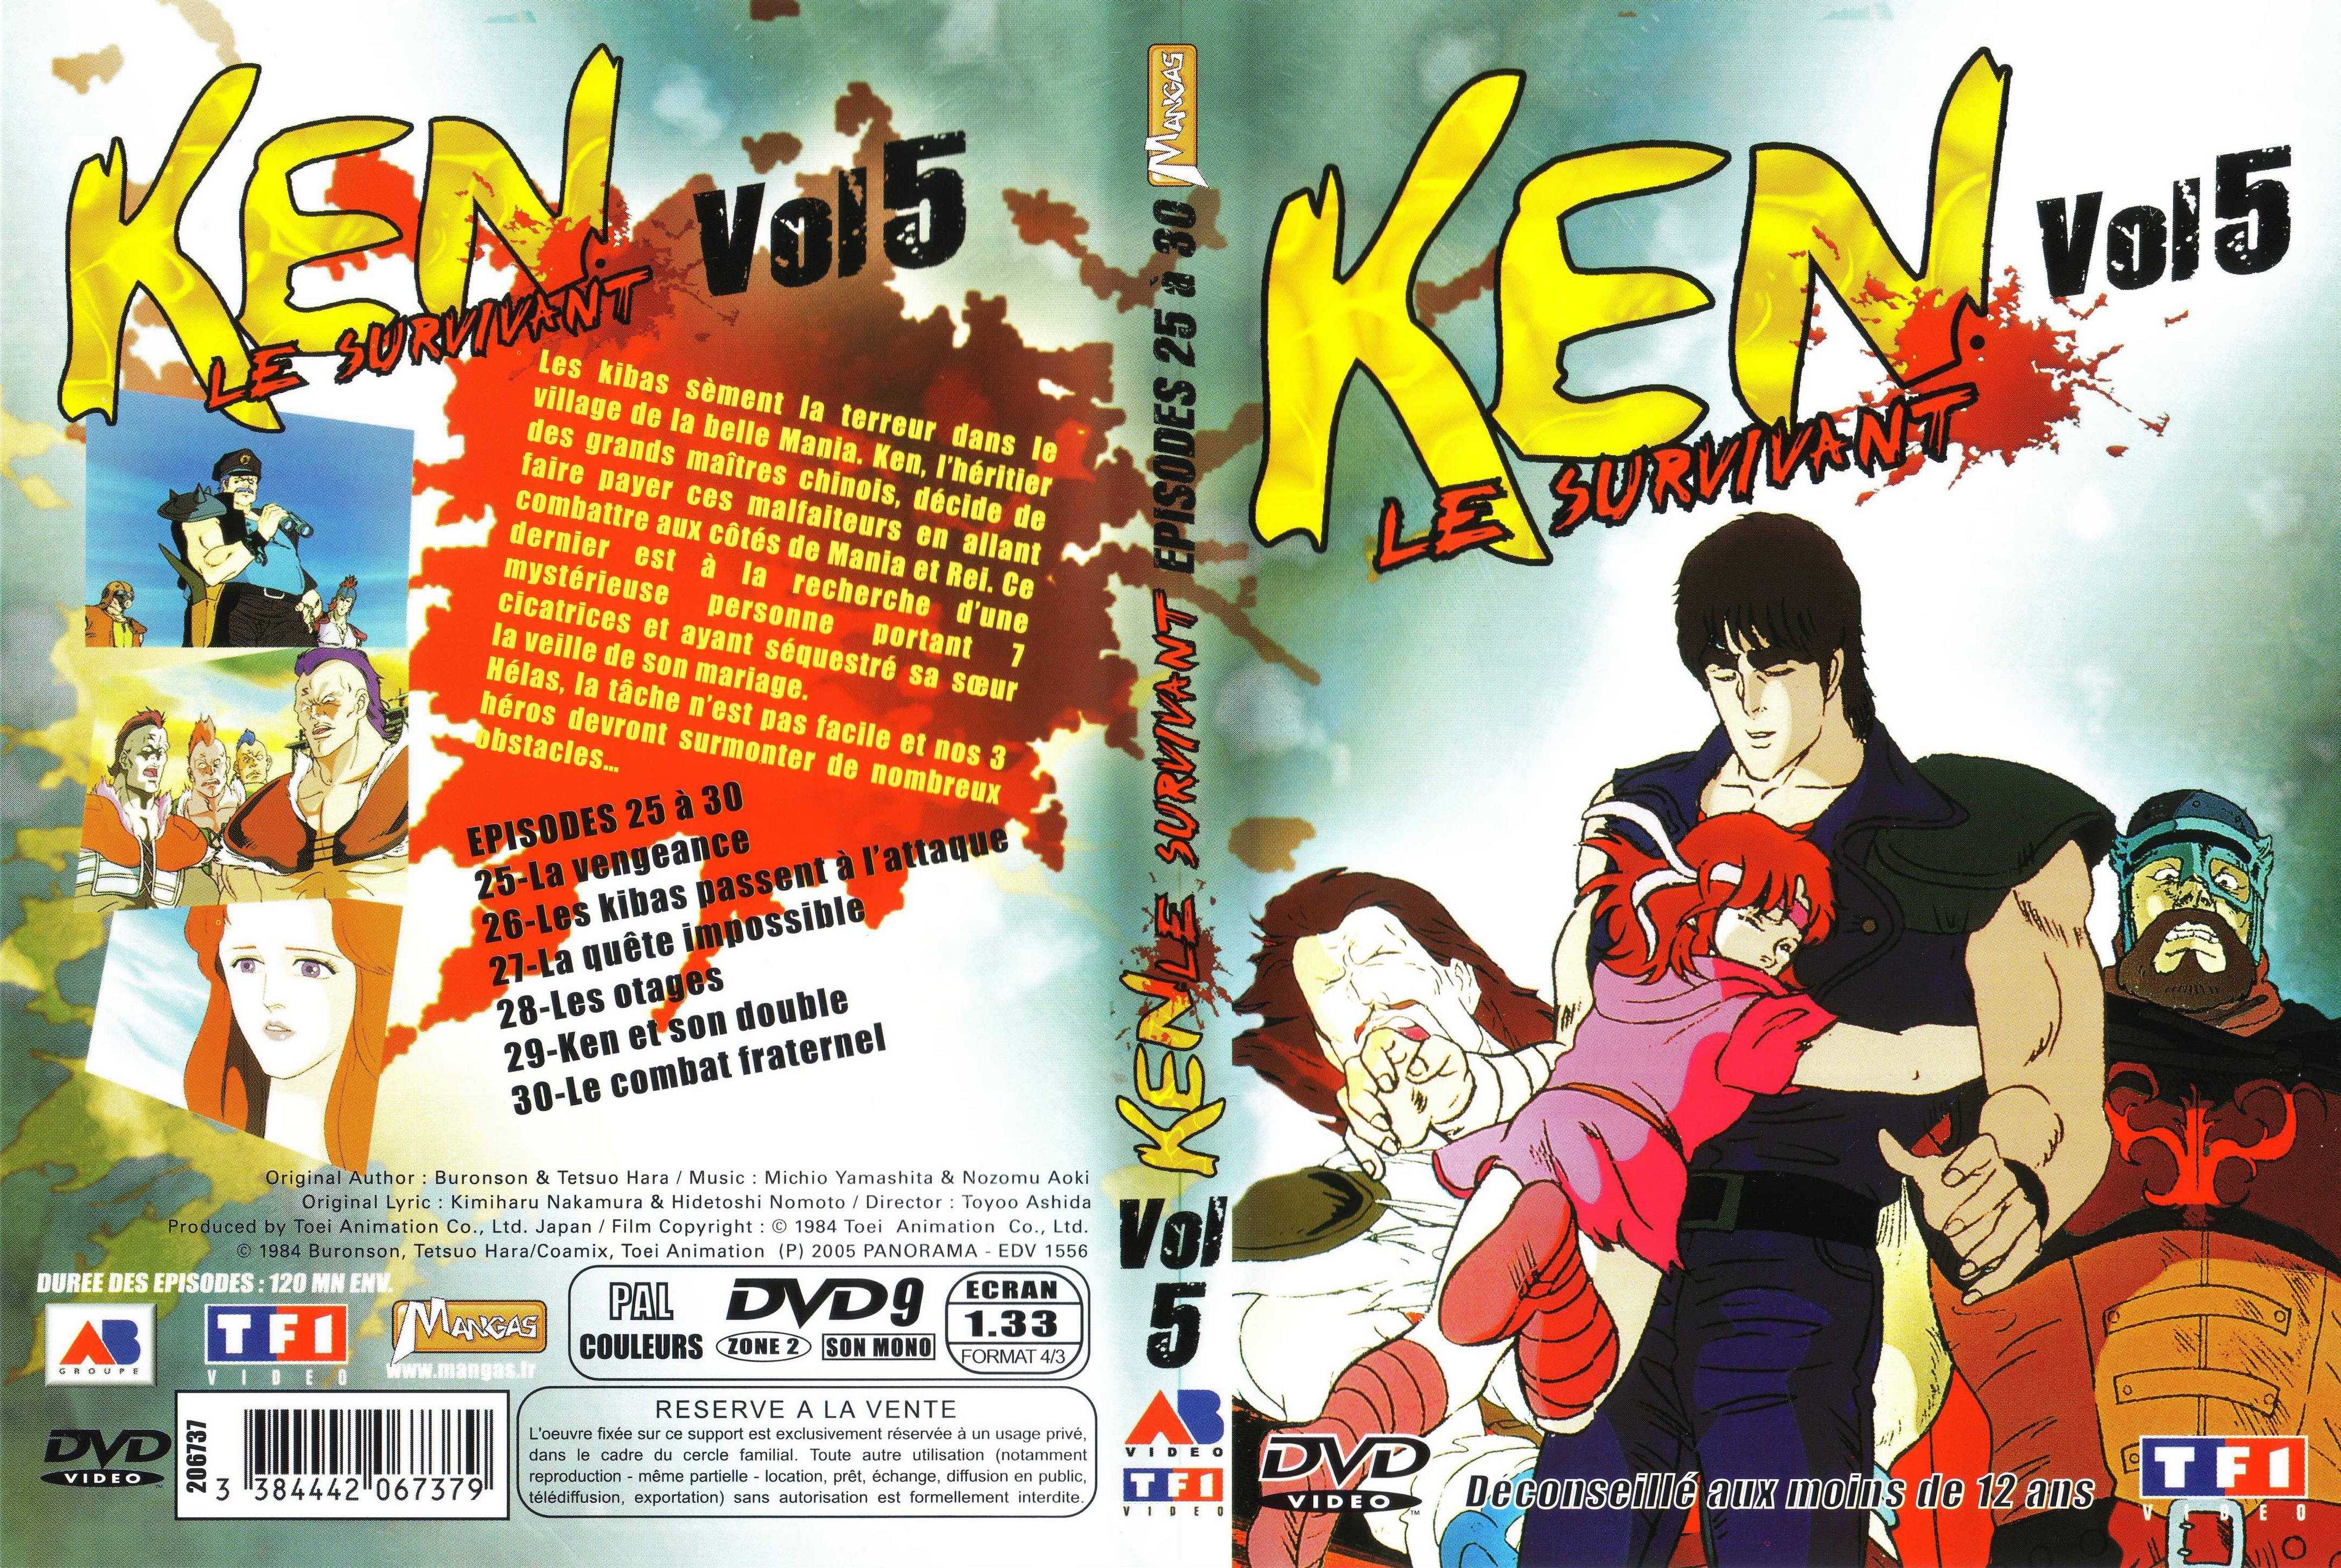 Jaquette DVD Ken le survivant vol 5